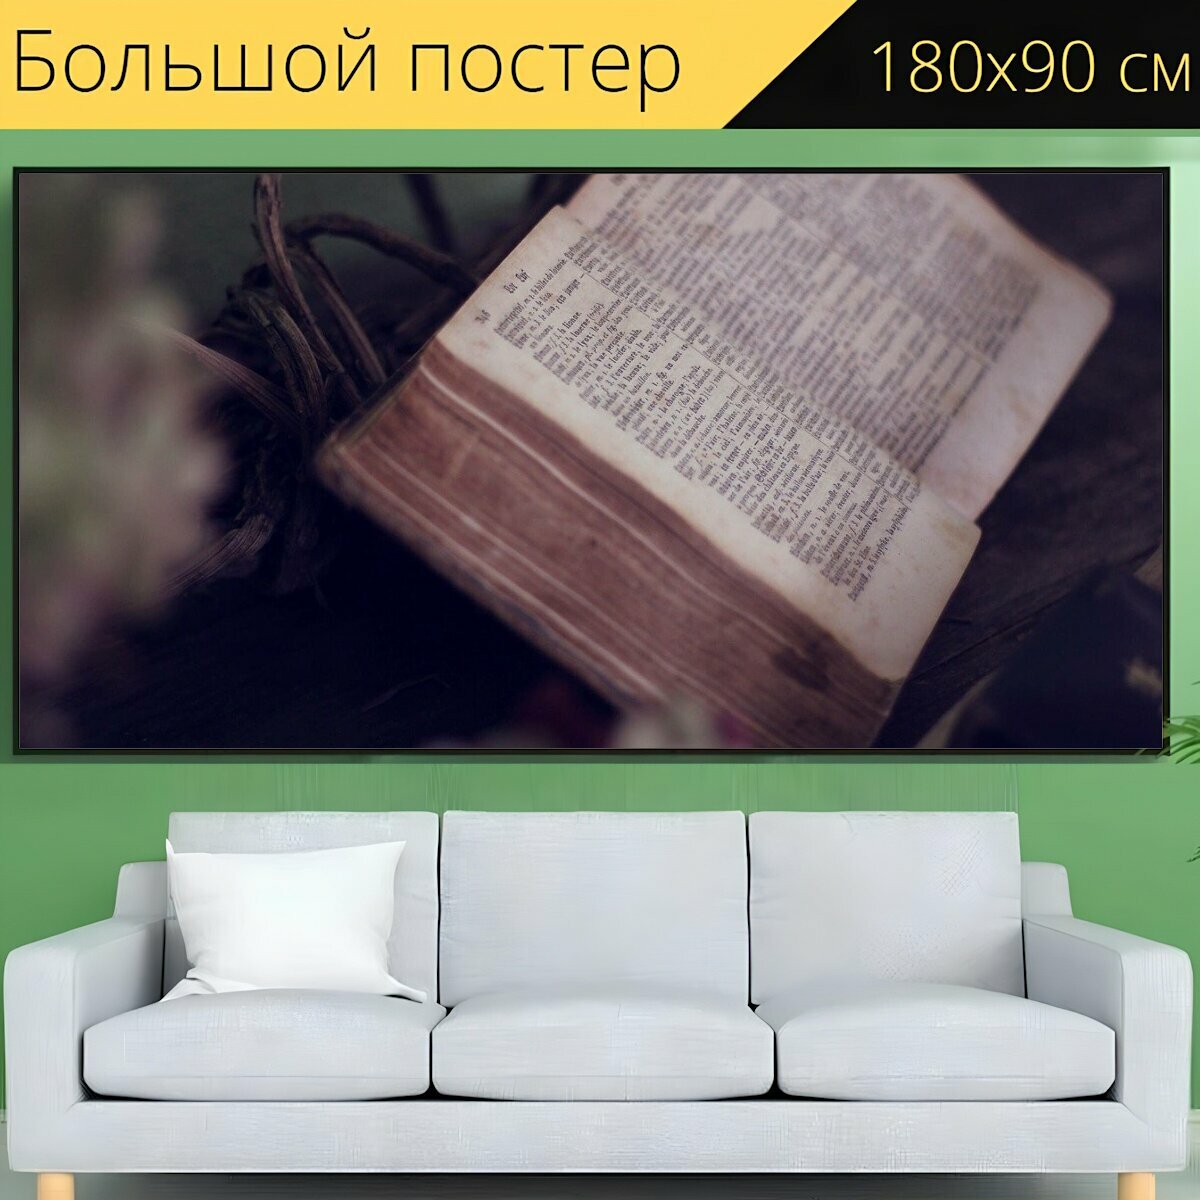 Большой постер "Книга, библия, писание" 180 x 90 см. для интерьера